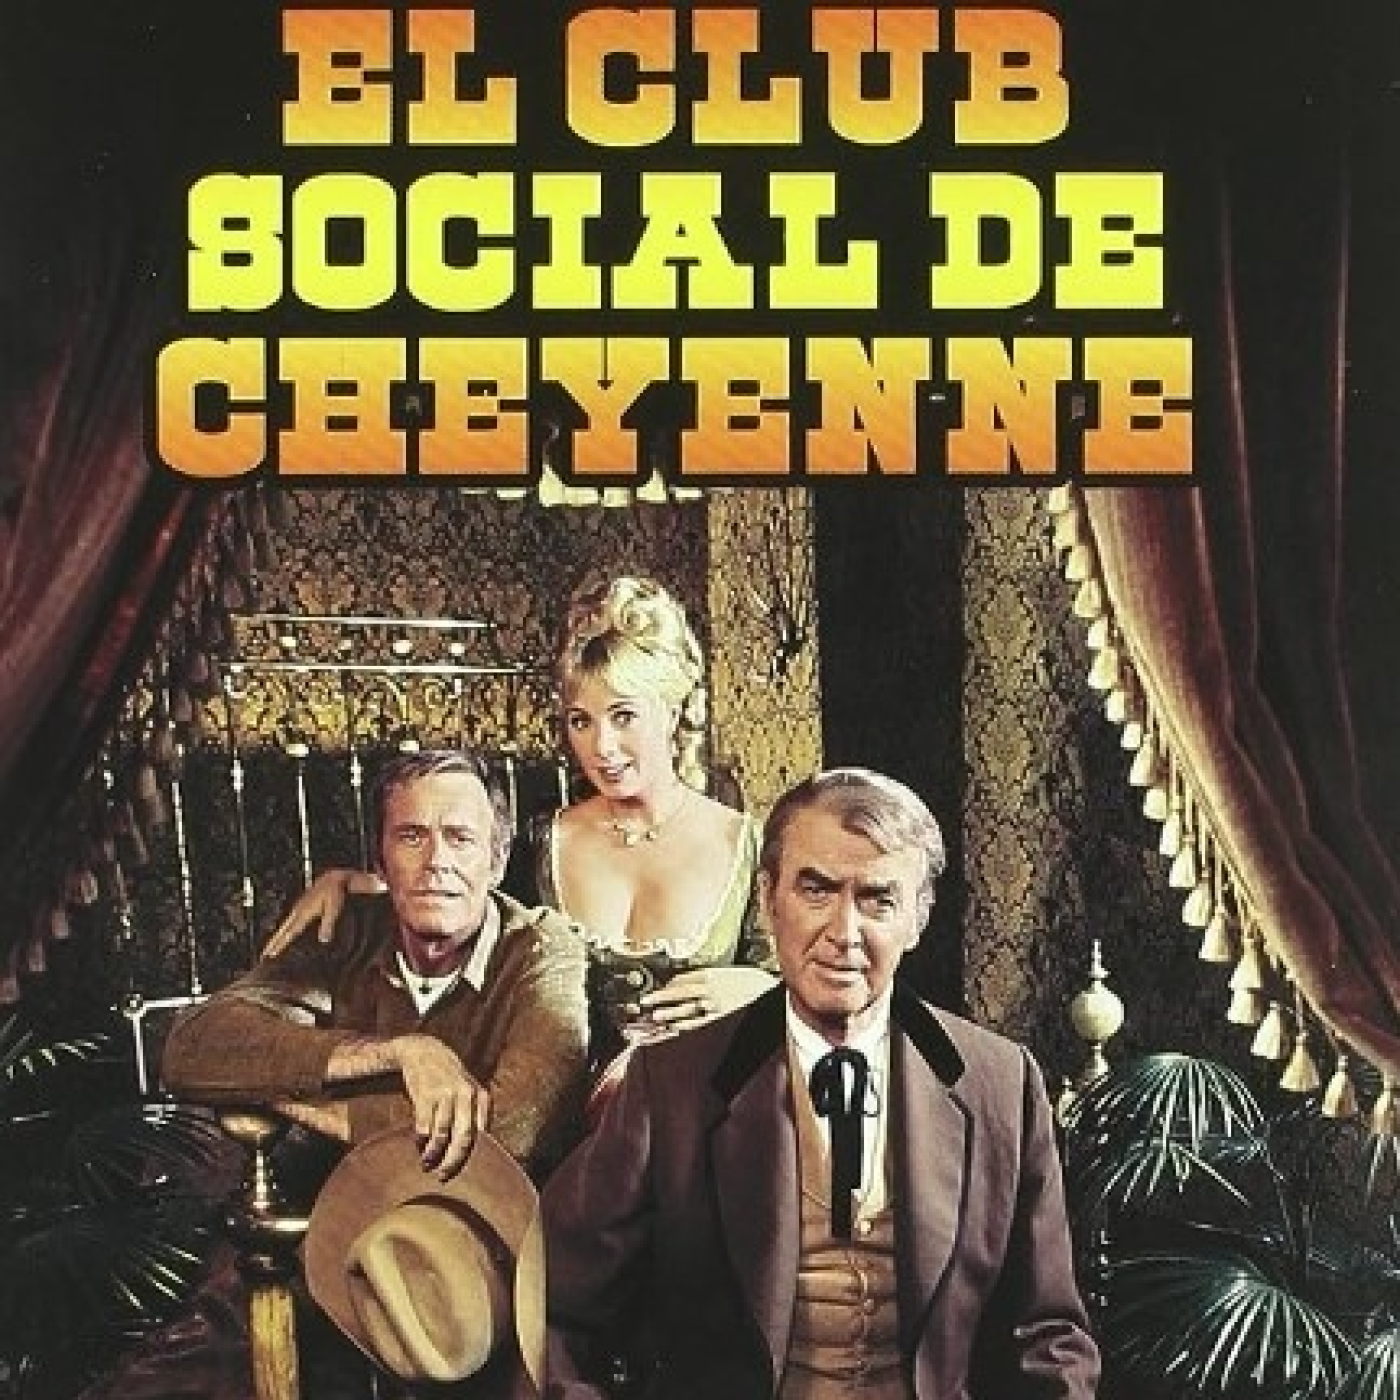 Peticiones Oyentes - El club social de Cheyenne - 1970